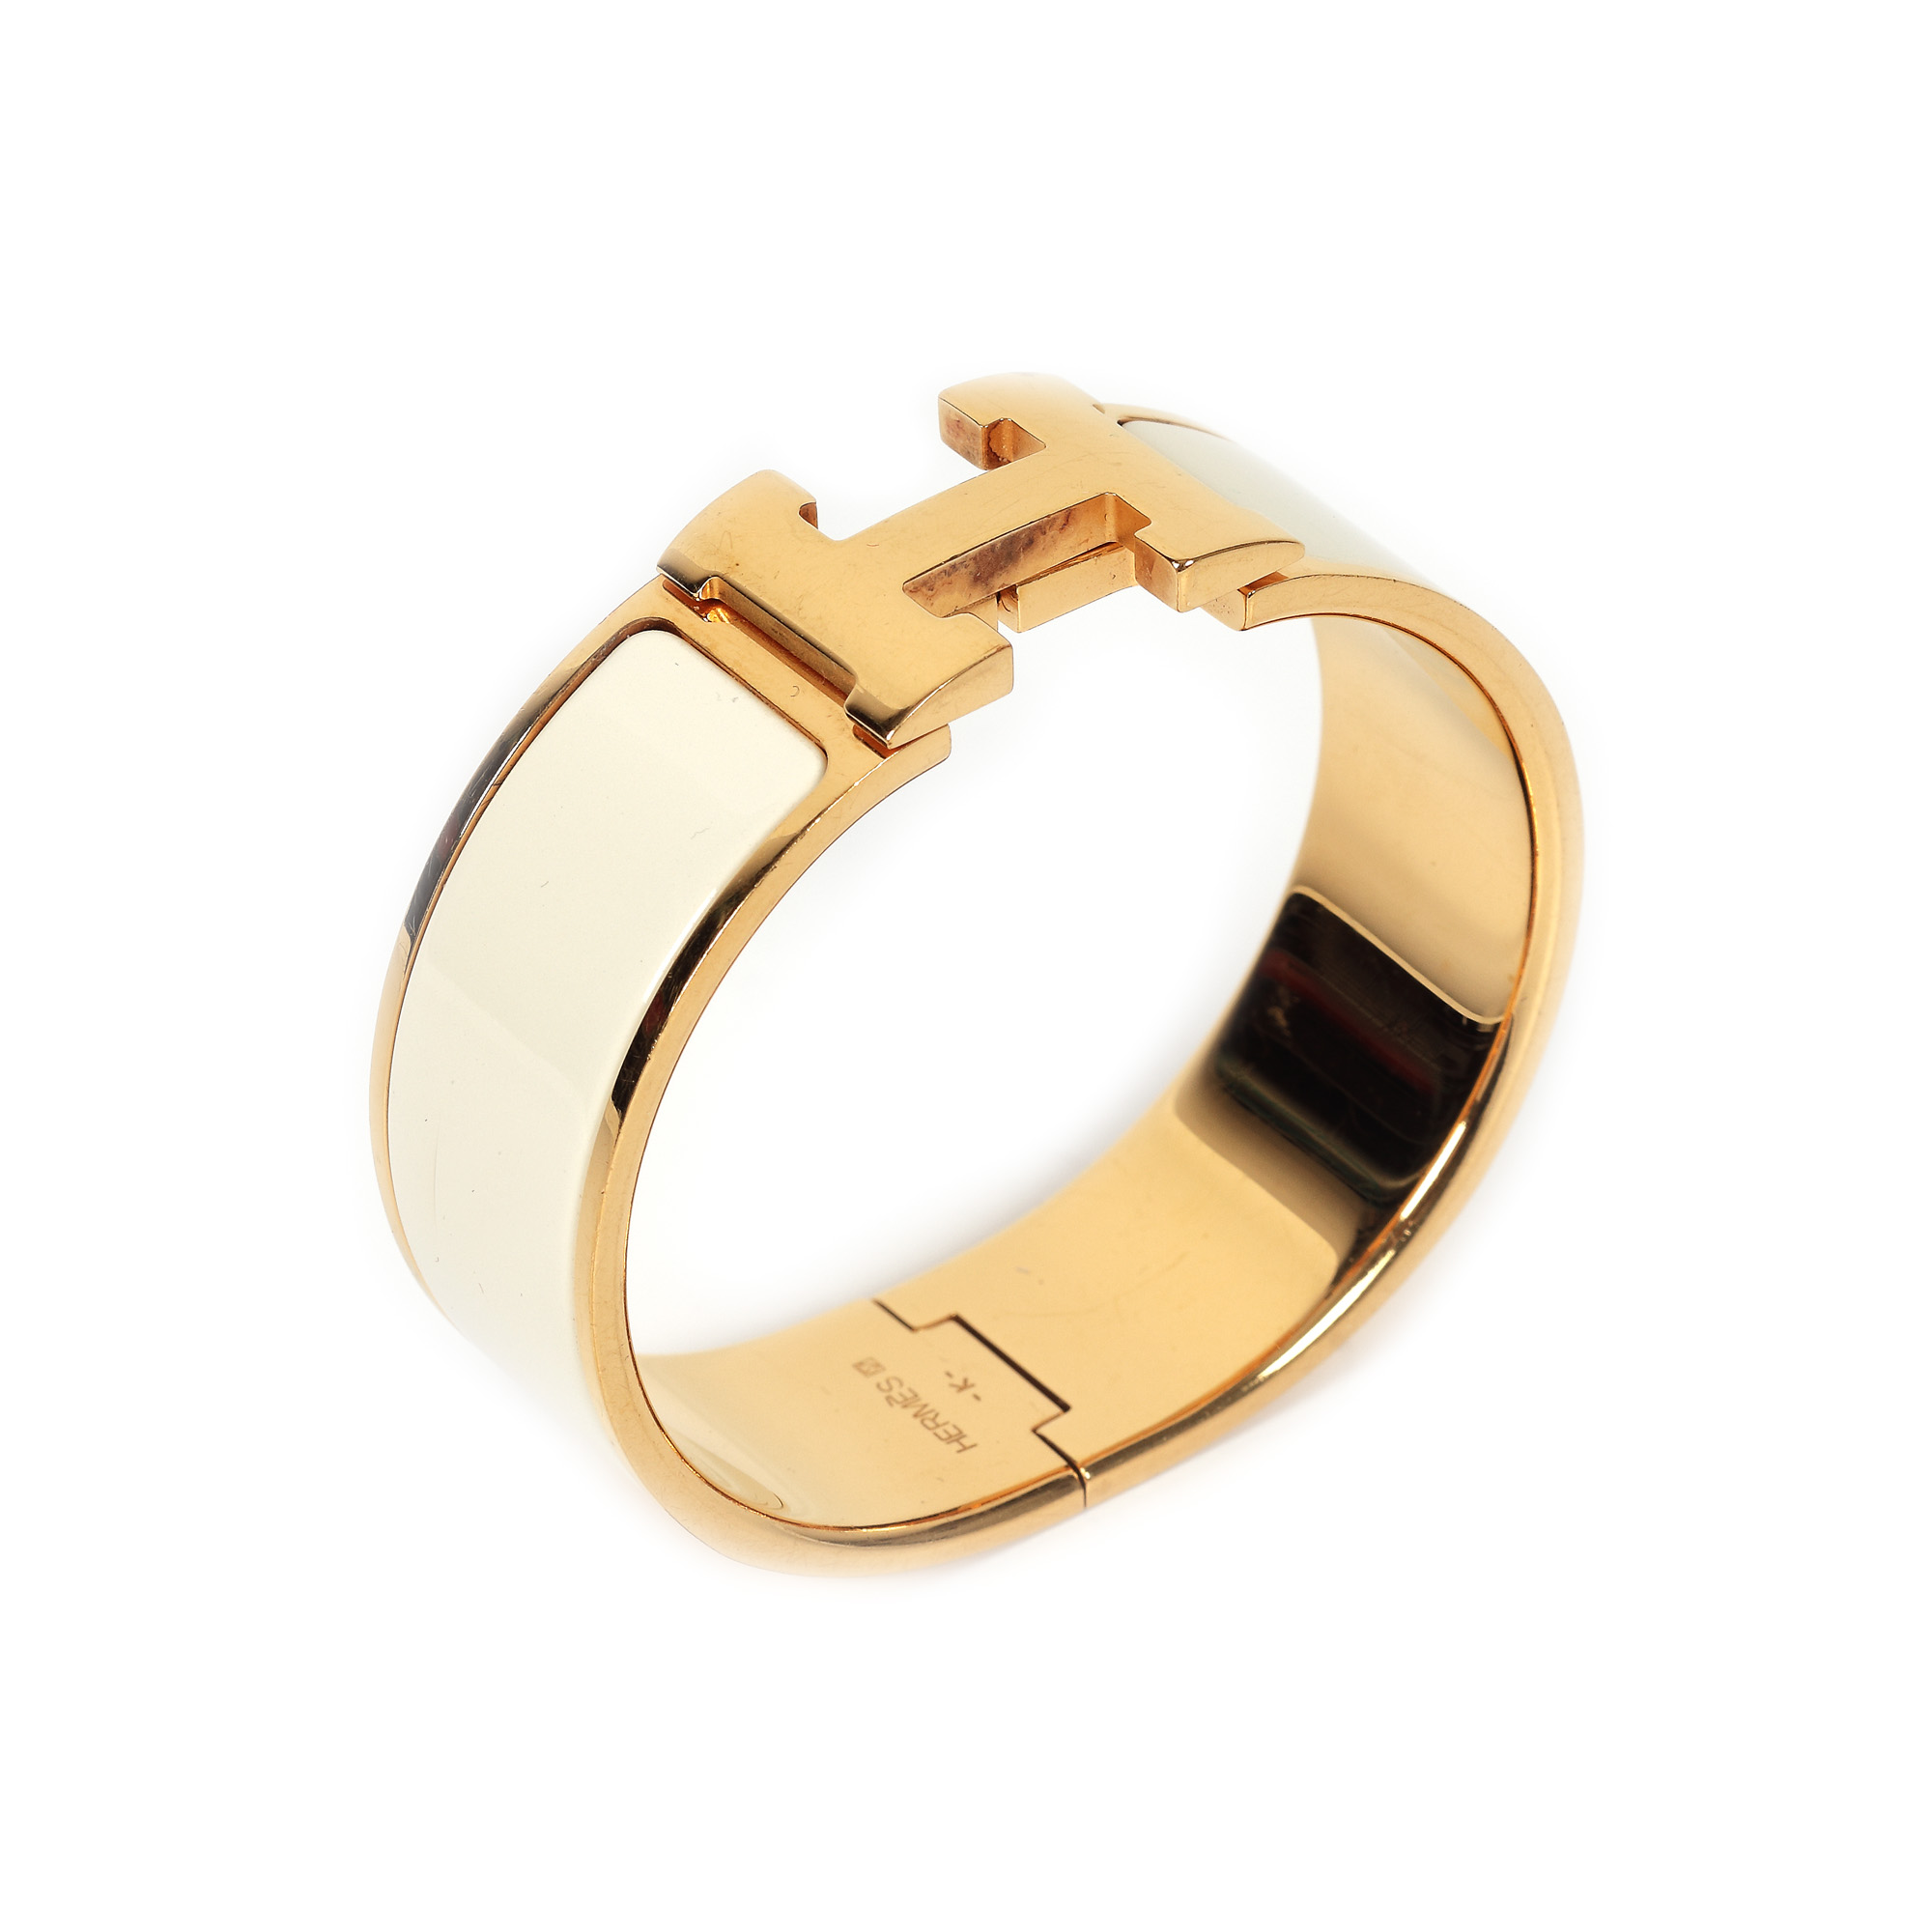 Hermès, Clic Clac bracelet, white enamel - Image 3 of 4